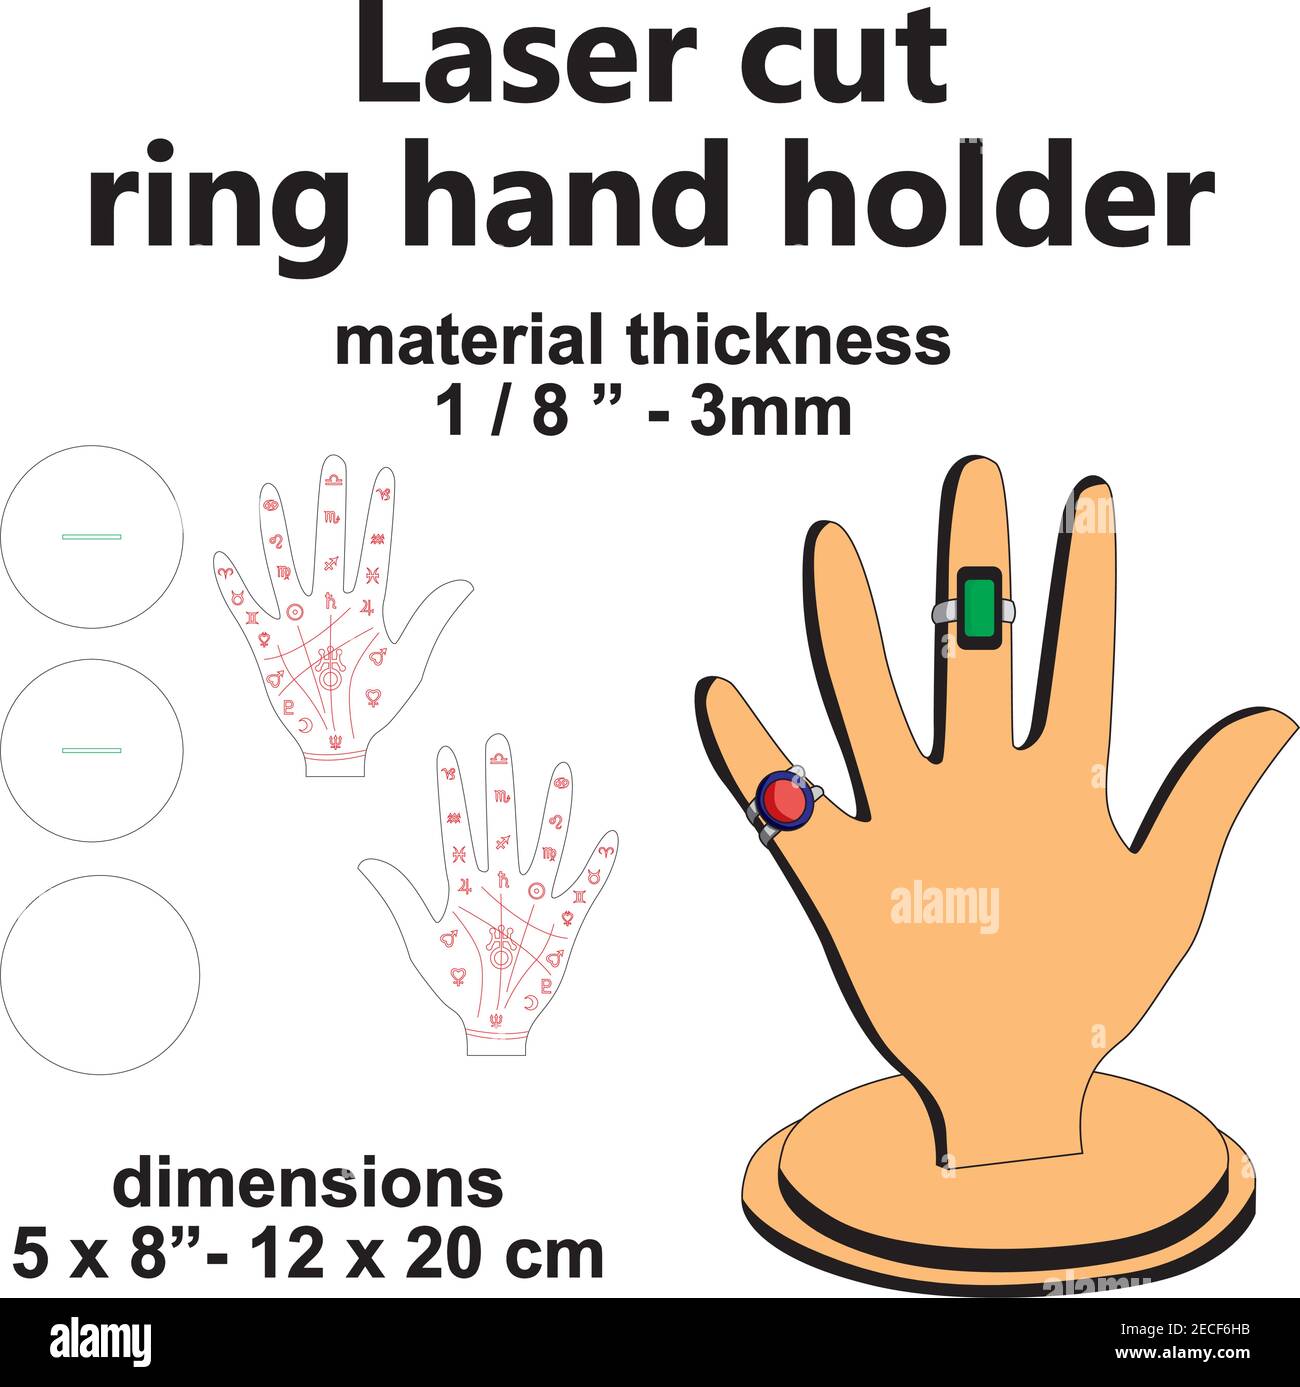 Laserschneiden Laser geschnitten Schmuck Hand Ring Hoder Anzeige Vektor Schablone Muster Holz Sperrholz mdf Acryl Design Stock Vektor